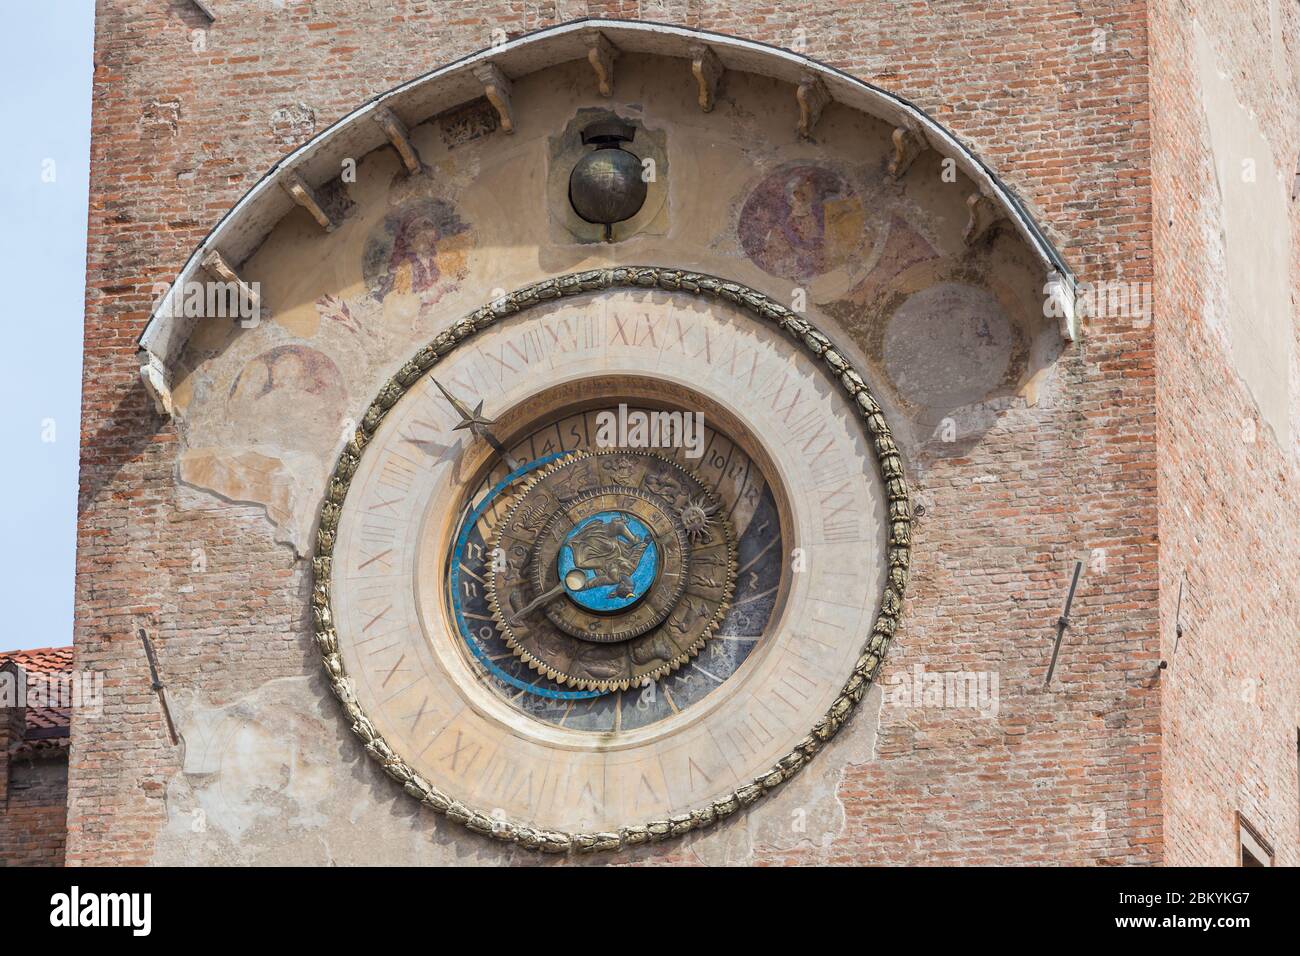 Torre dell'Orologio, tour d'horloge, horloge astronomique, Mantoue, Lombardie, Italie Banque D'Images